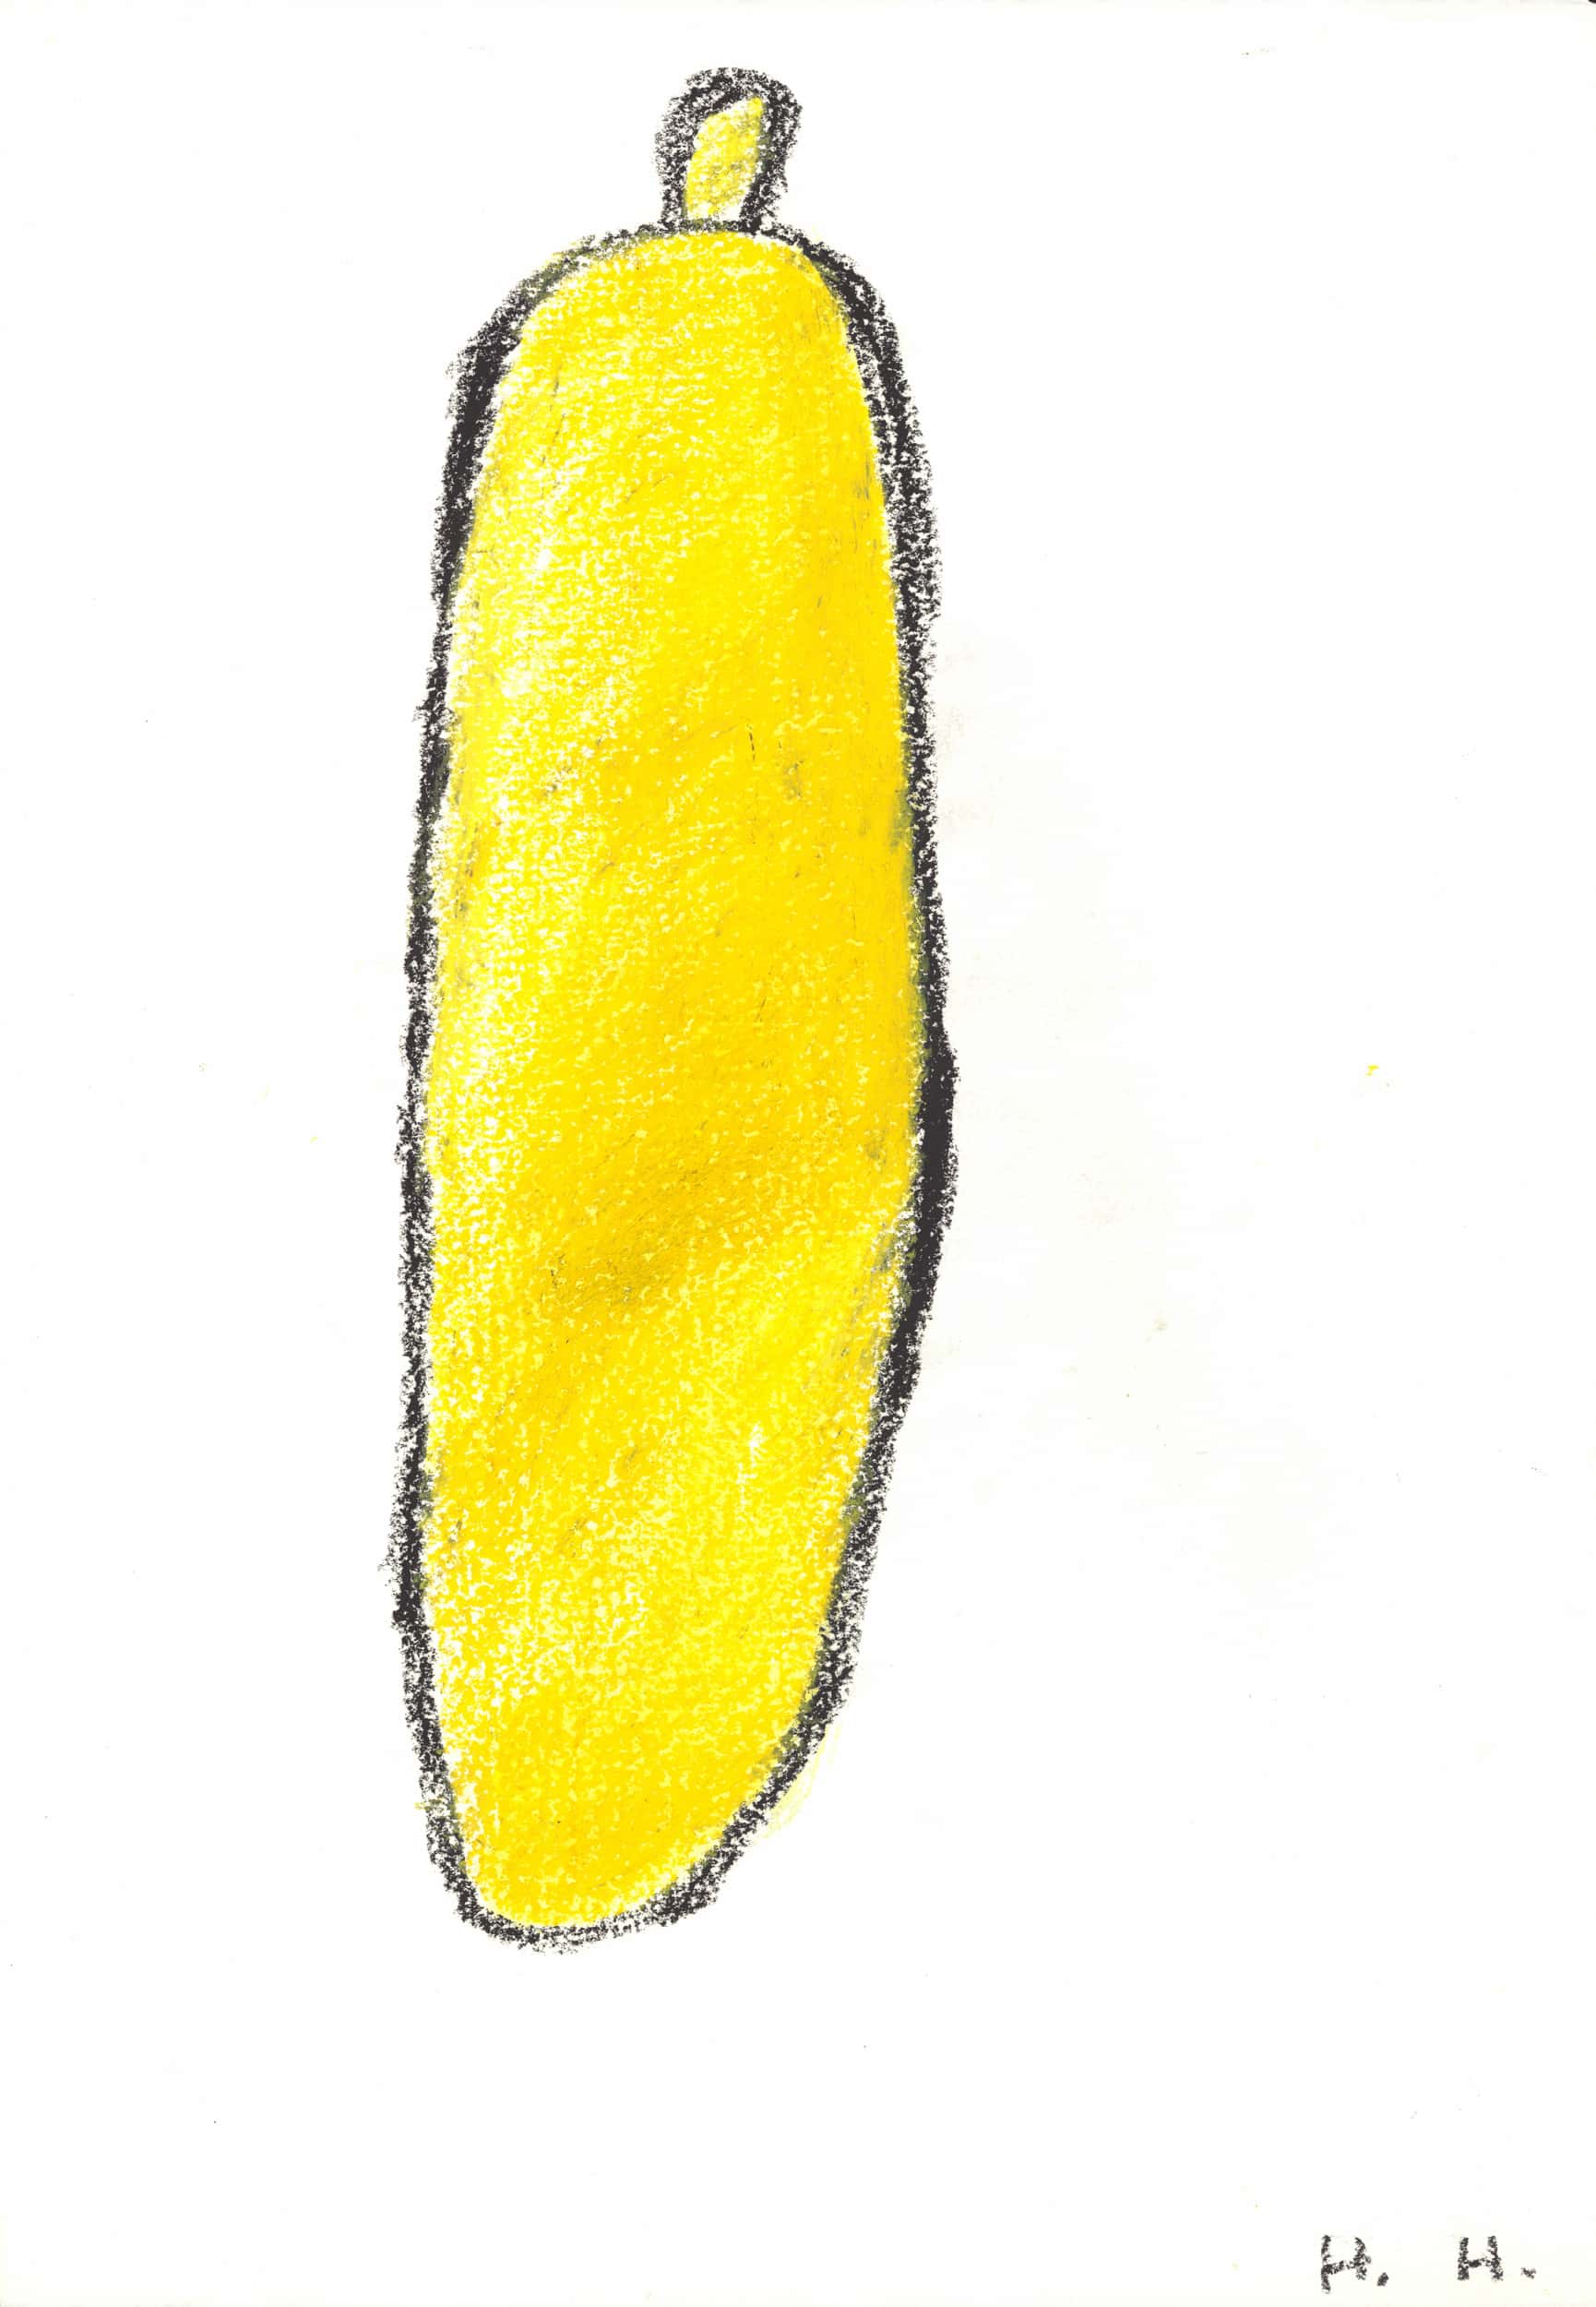 hladisch helmut - Banane / Banana